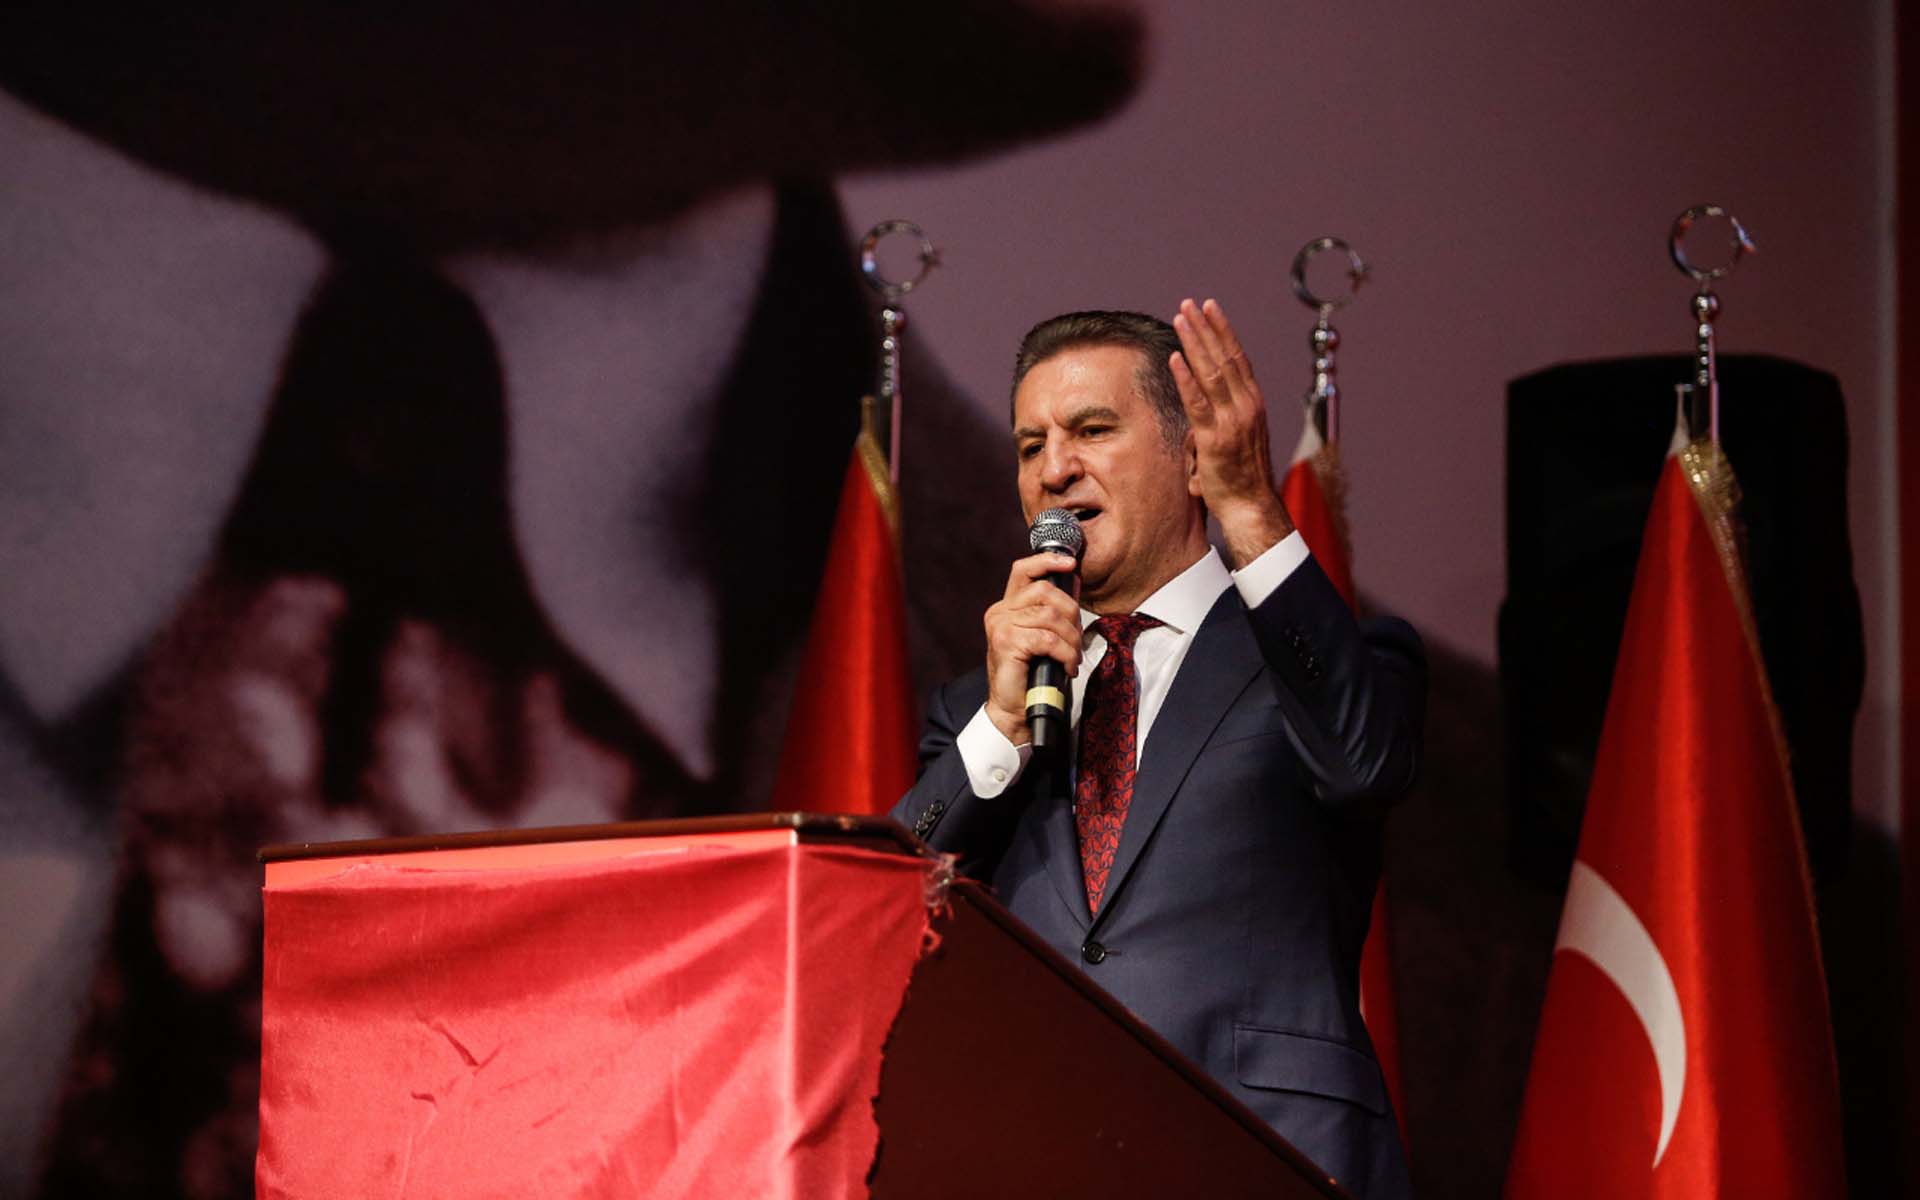 Vücudum dursa zihnim durmuyor diyen Mustafa Sarıgül'den flaş çıkış: 60 bin kişi üye olmazsa partisini bırakacak